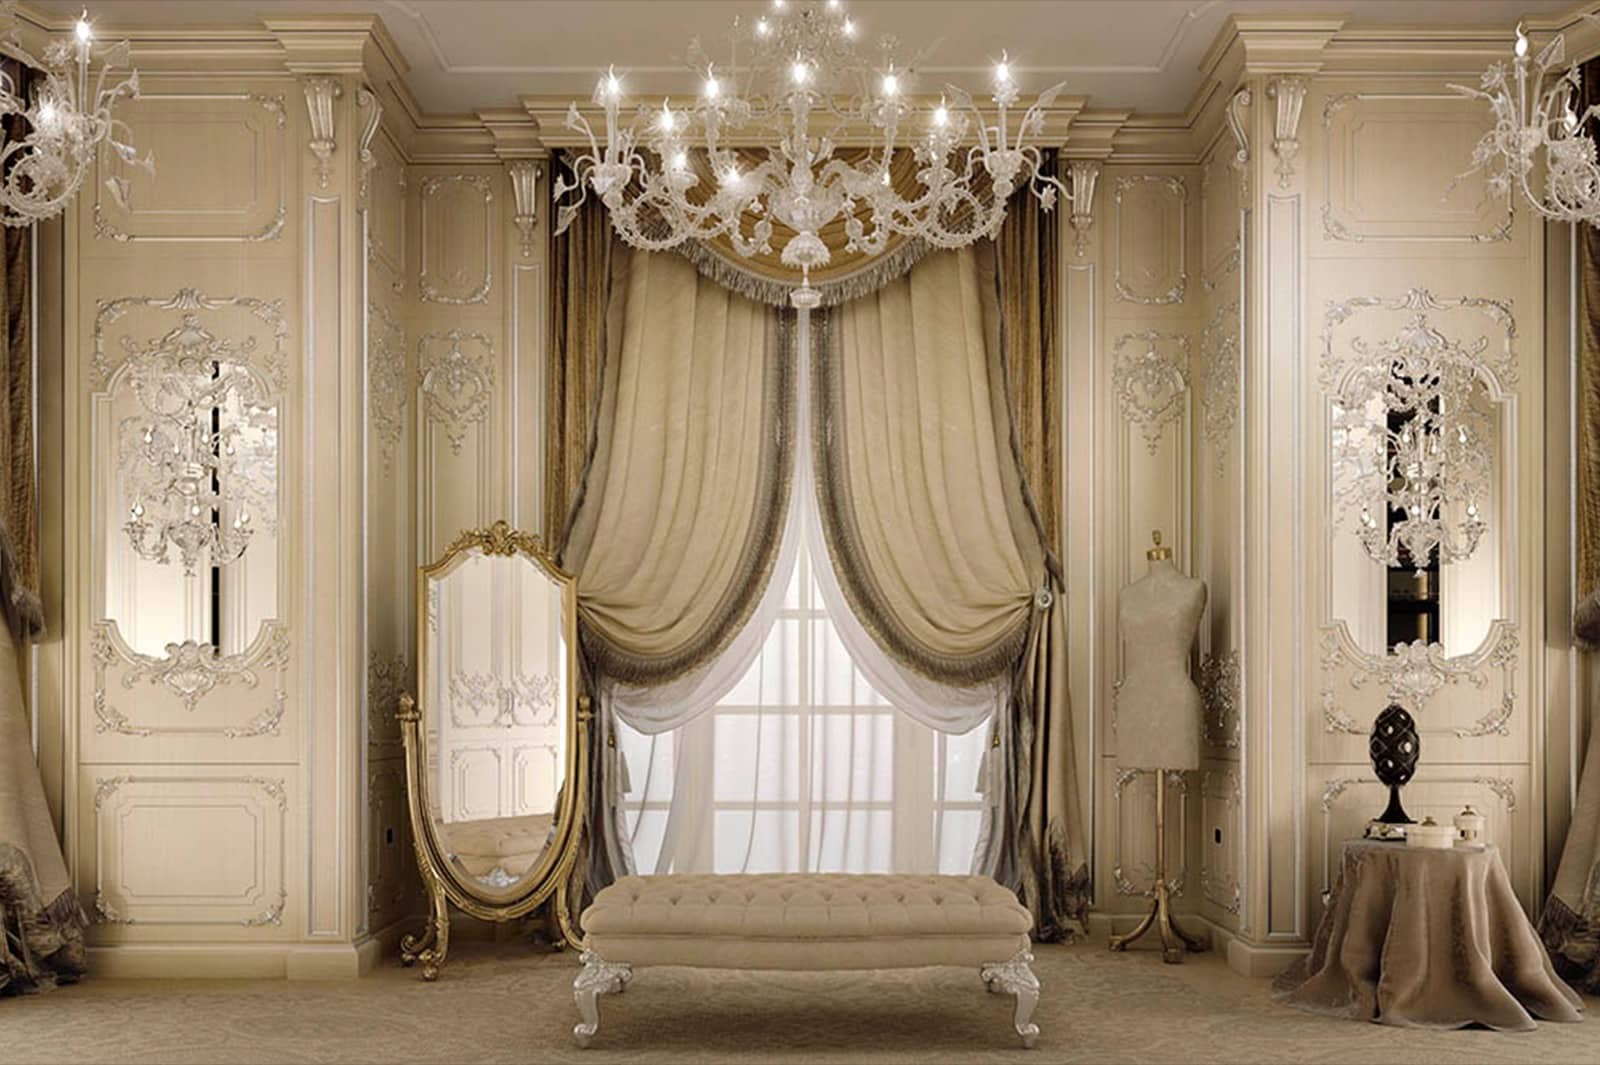 декорирование классической роскошной виллы шторами, панелями, буазери, аксессуарами, обоями, люстрами Swarovski, золотыми деталями, элегантными тканями, лучшее качество, сделано в Италии, идеи